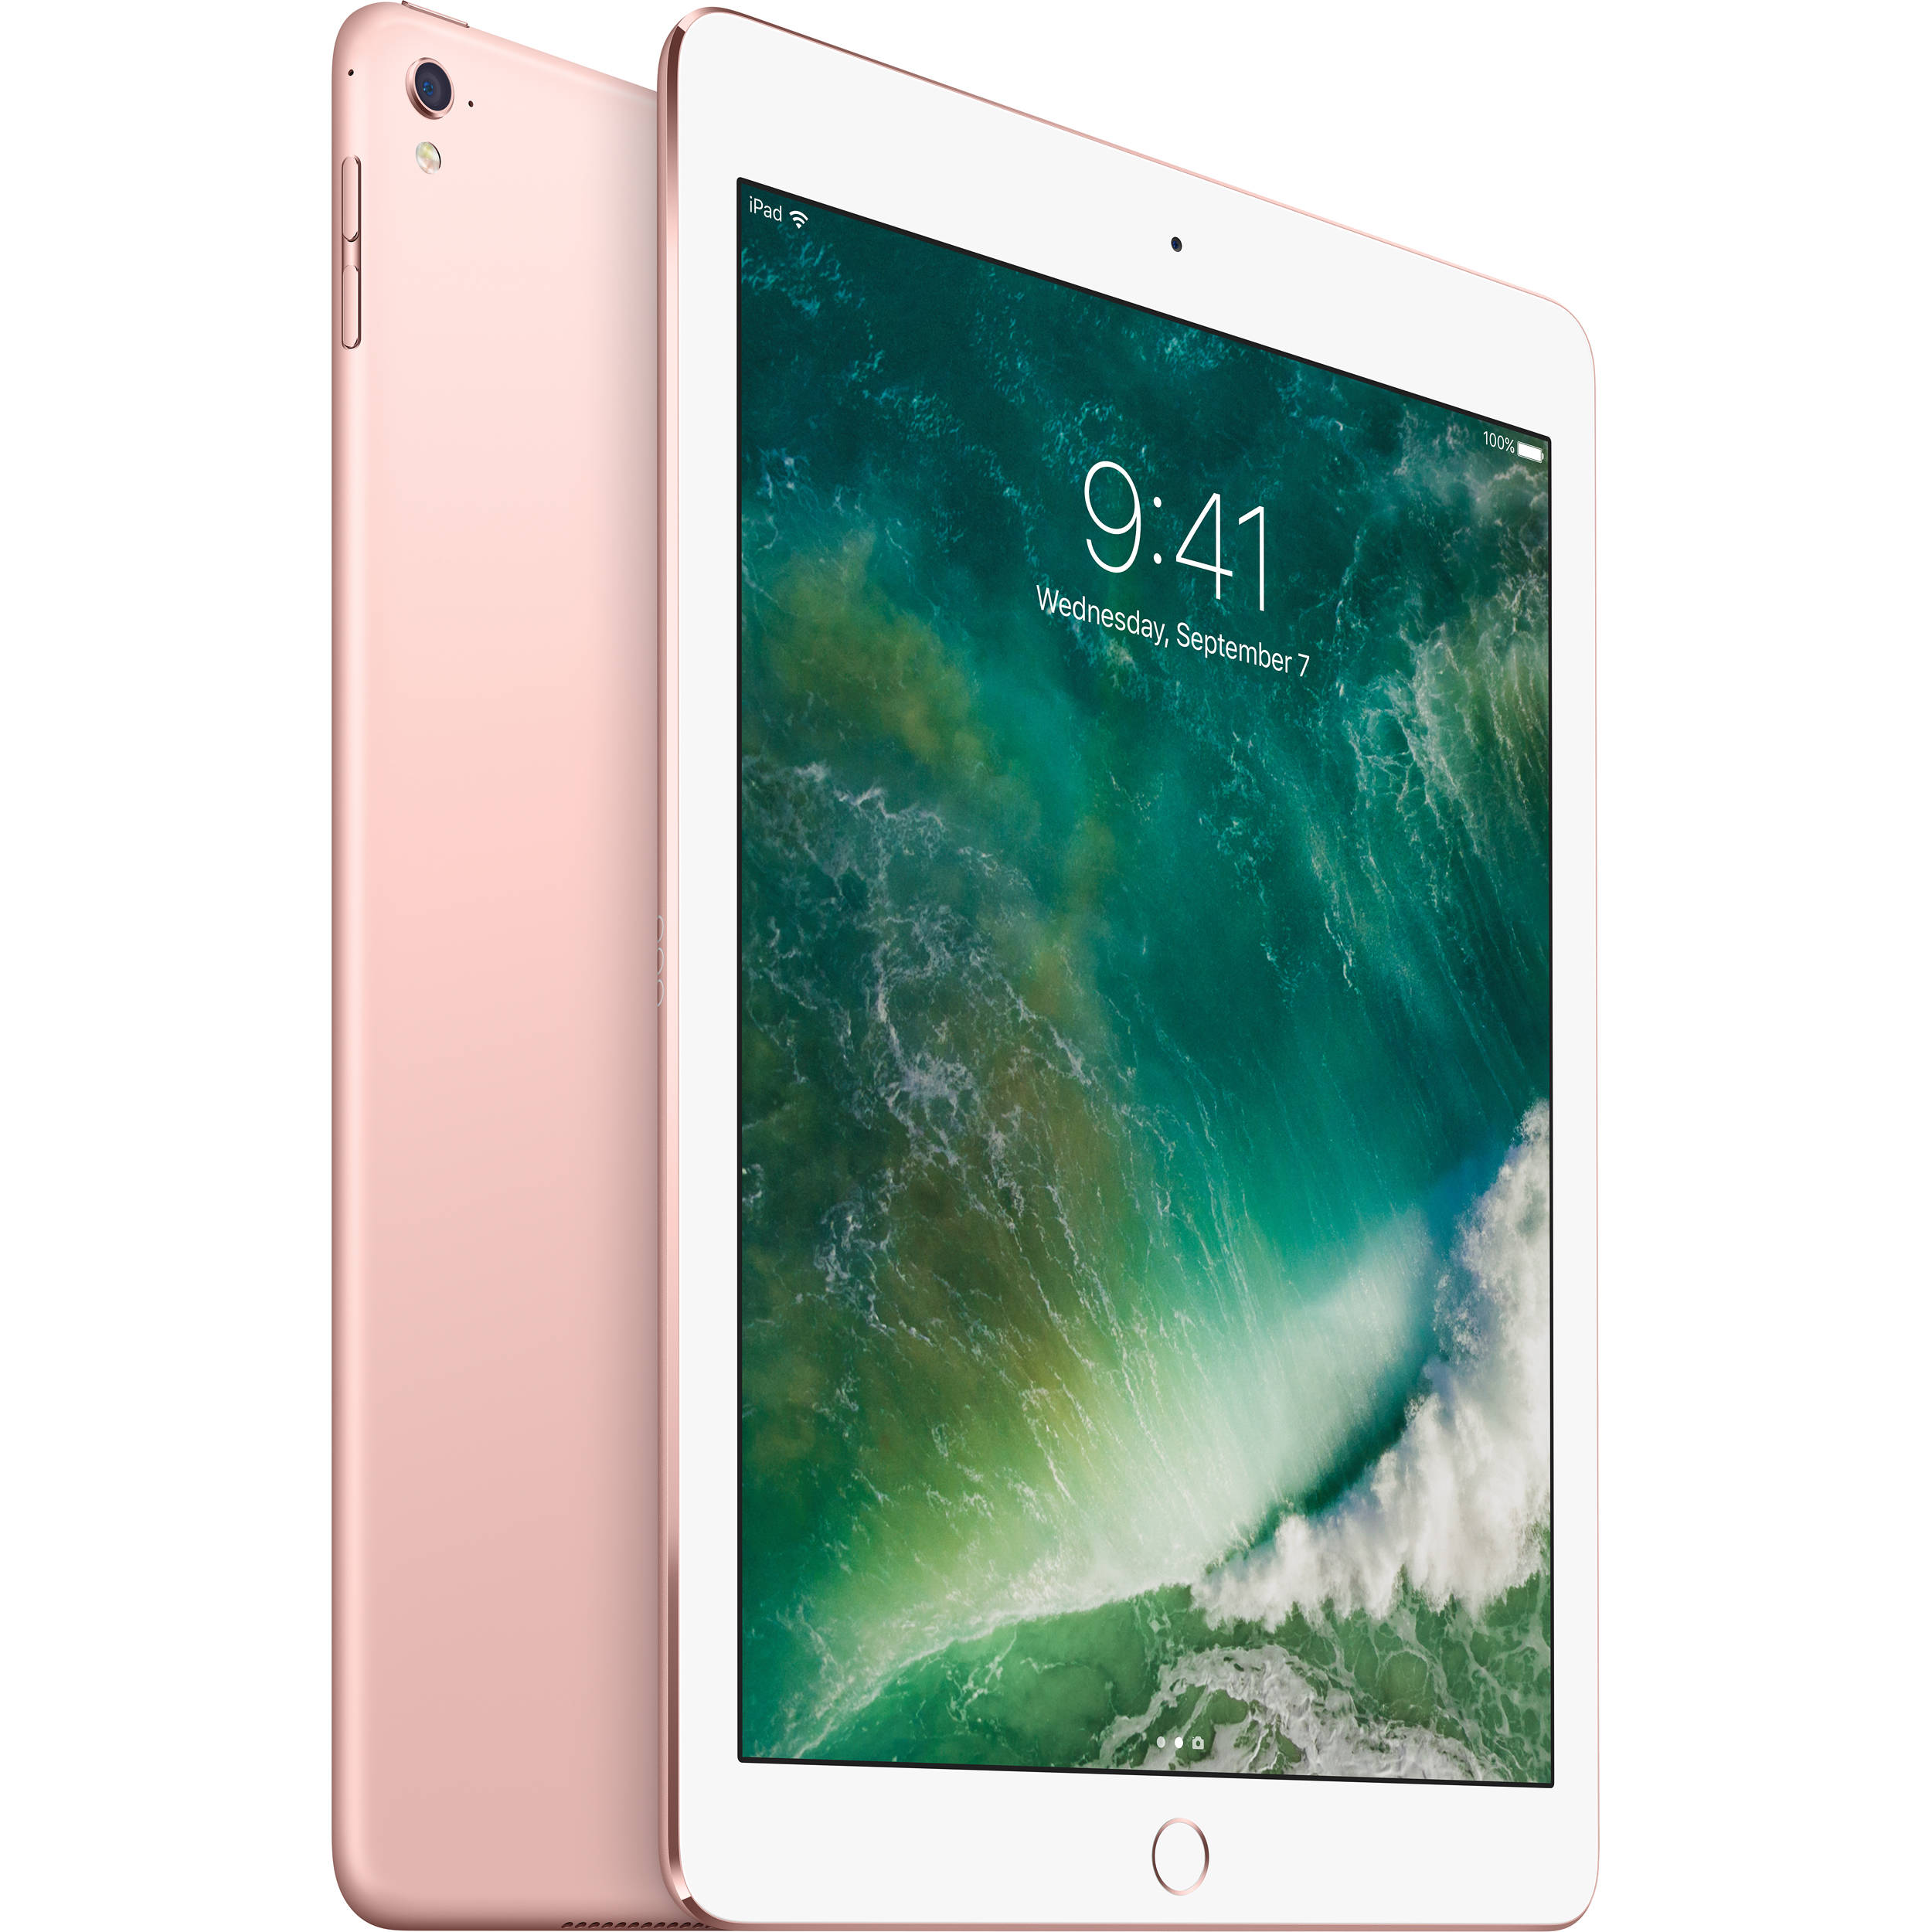 Apple iPad Pro (2016) 9.7" MM172LL/A - Wi-Fi 32GB - Gold - Refurbished Good